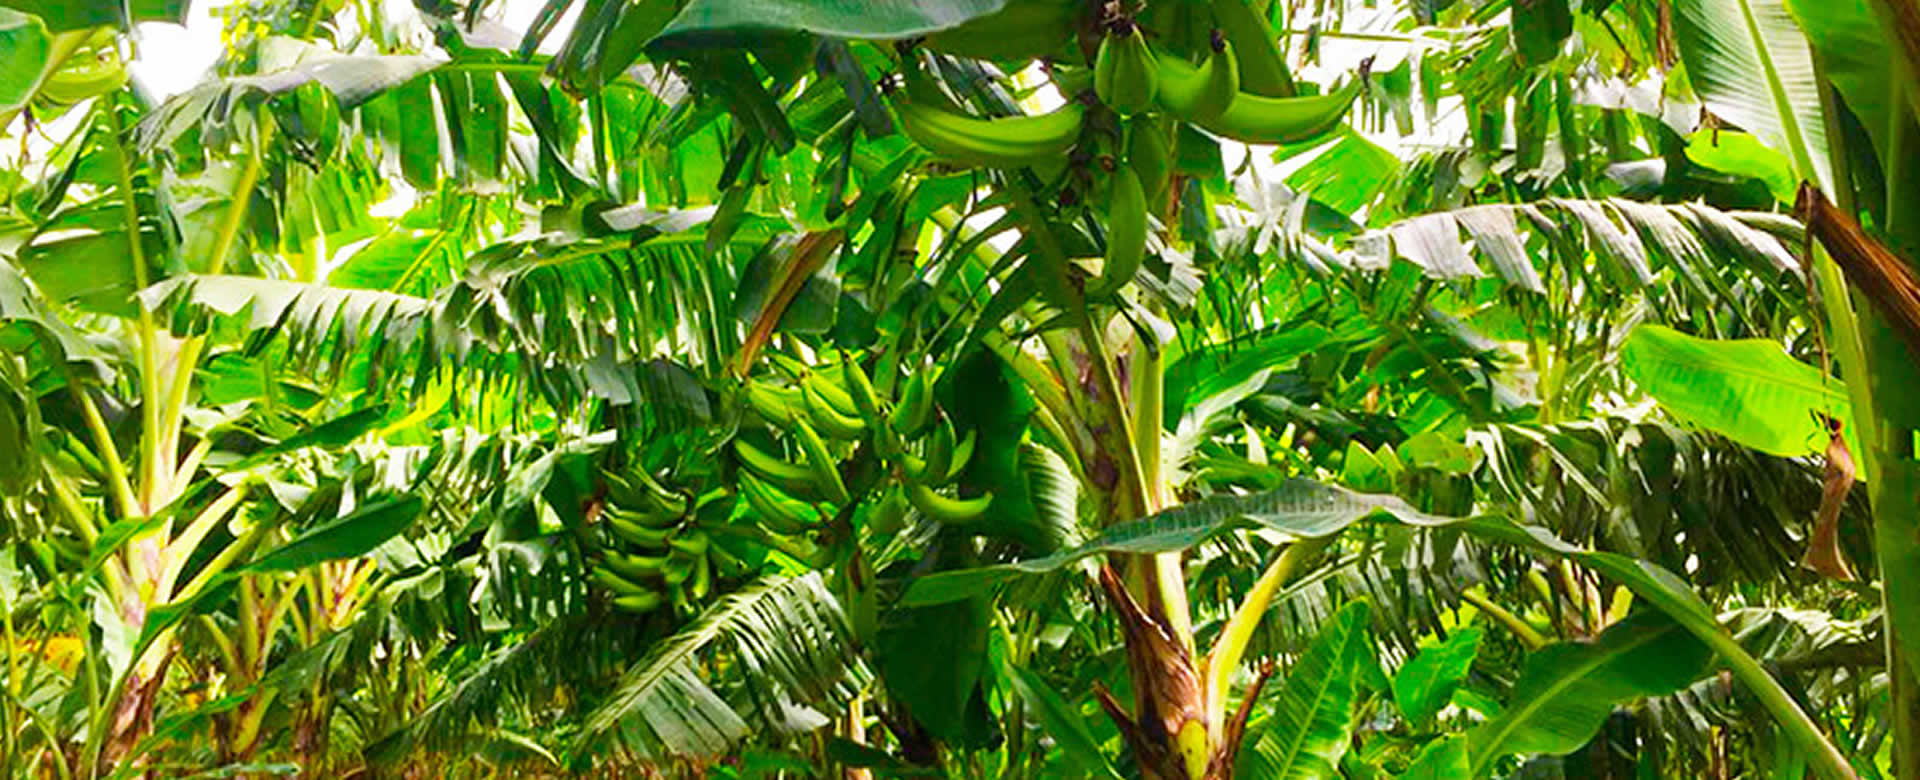 MAG informa que la producción de plátano sigue en aumento